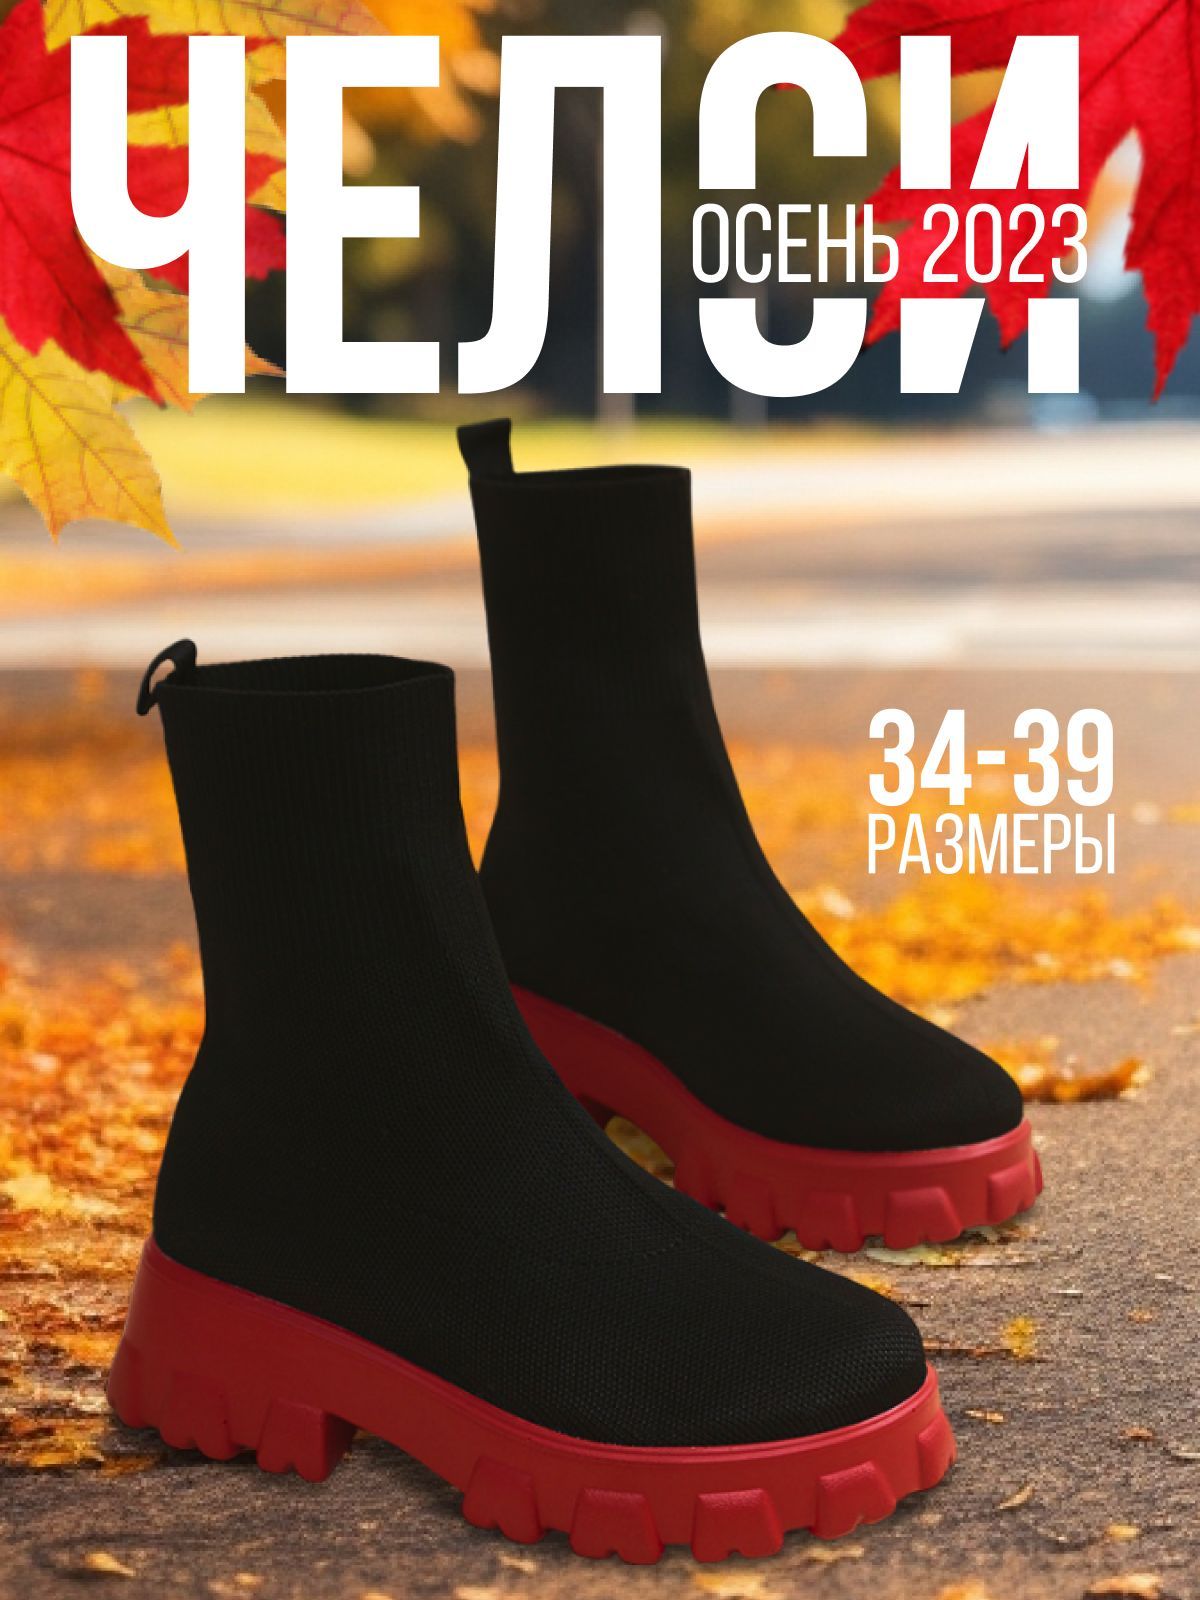 Черные Ботинки с Красной Подошвой – купить в интернет-магазине OZON понизкой цене